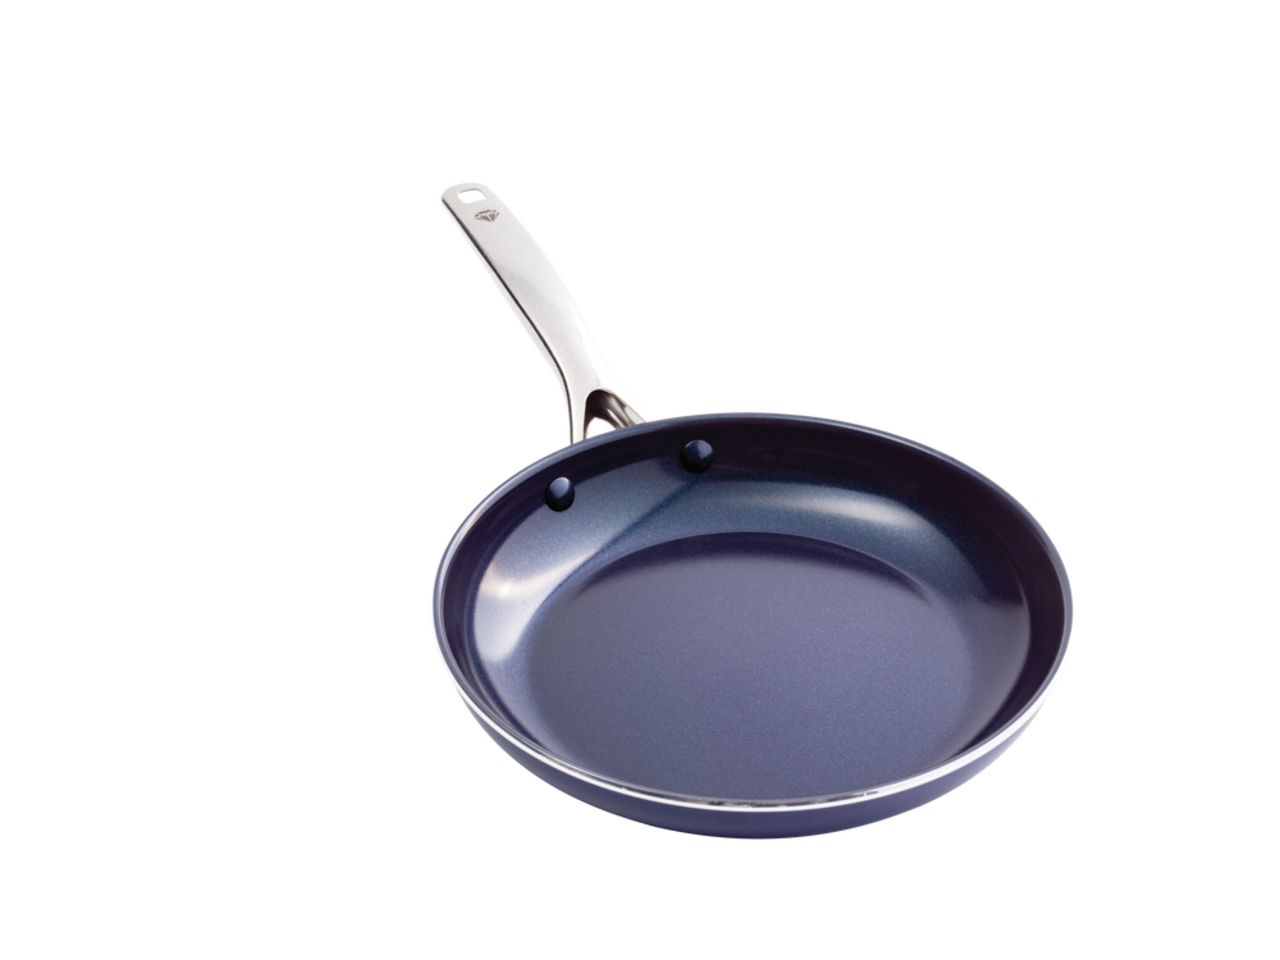 Blue Diamond Red Diamond Fry Pan, 12 inch 